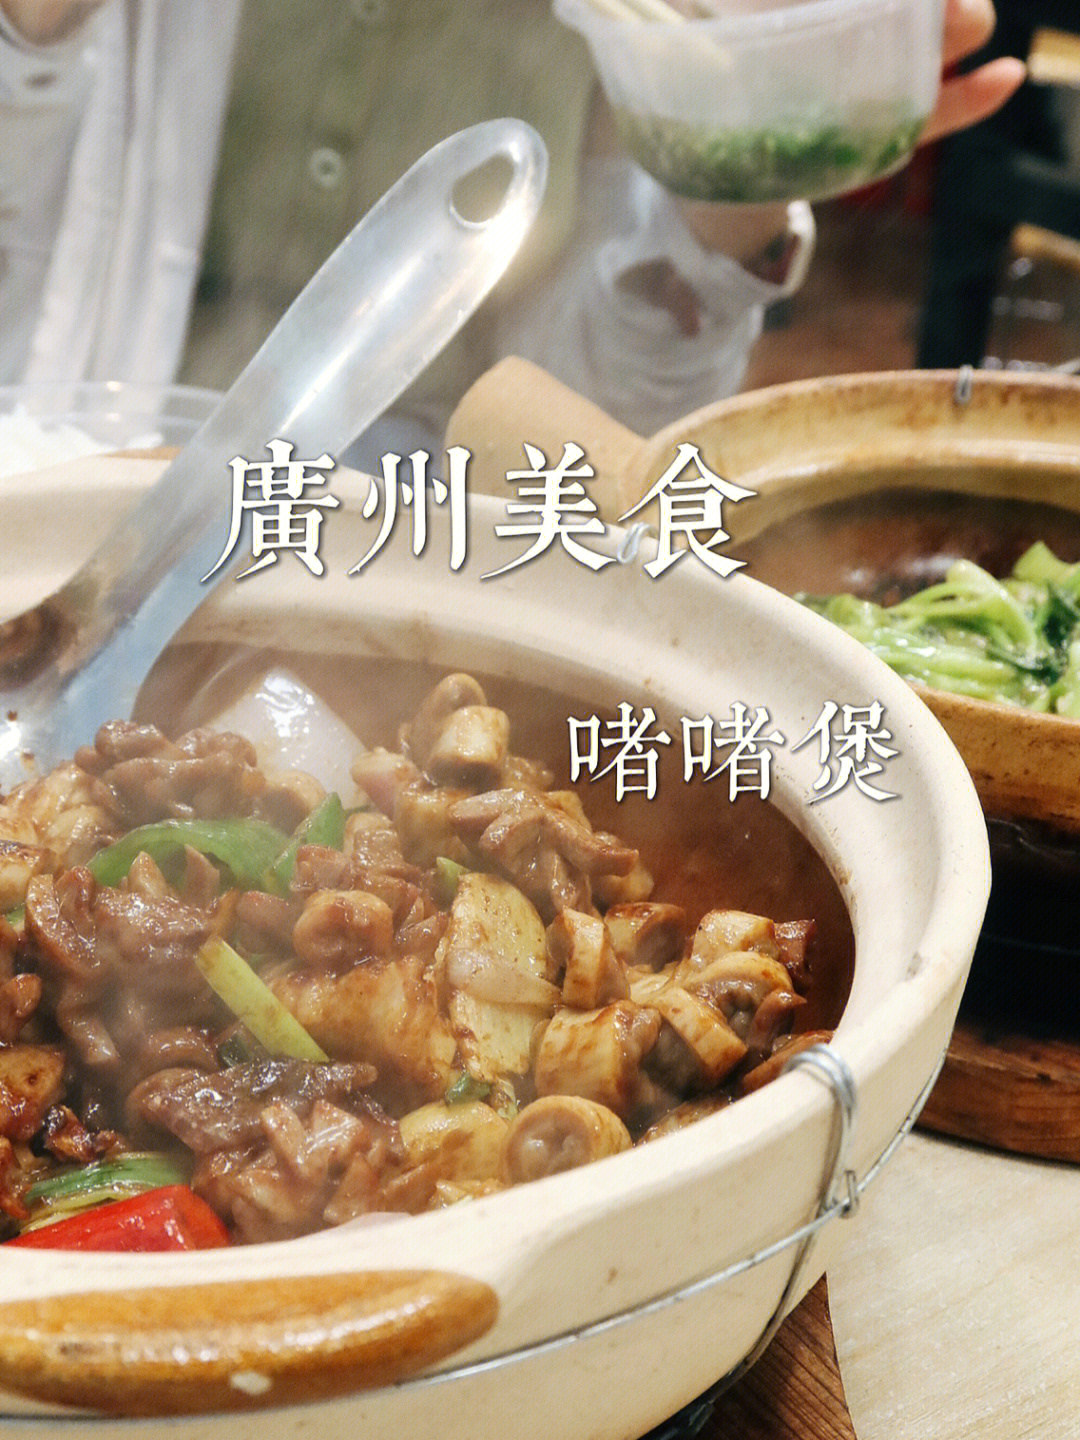 广州美食啫啫煲连炫两碗白米饭那种